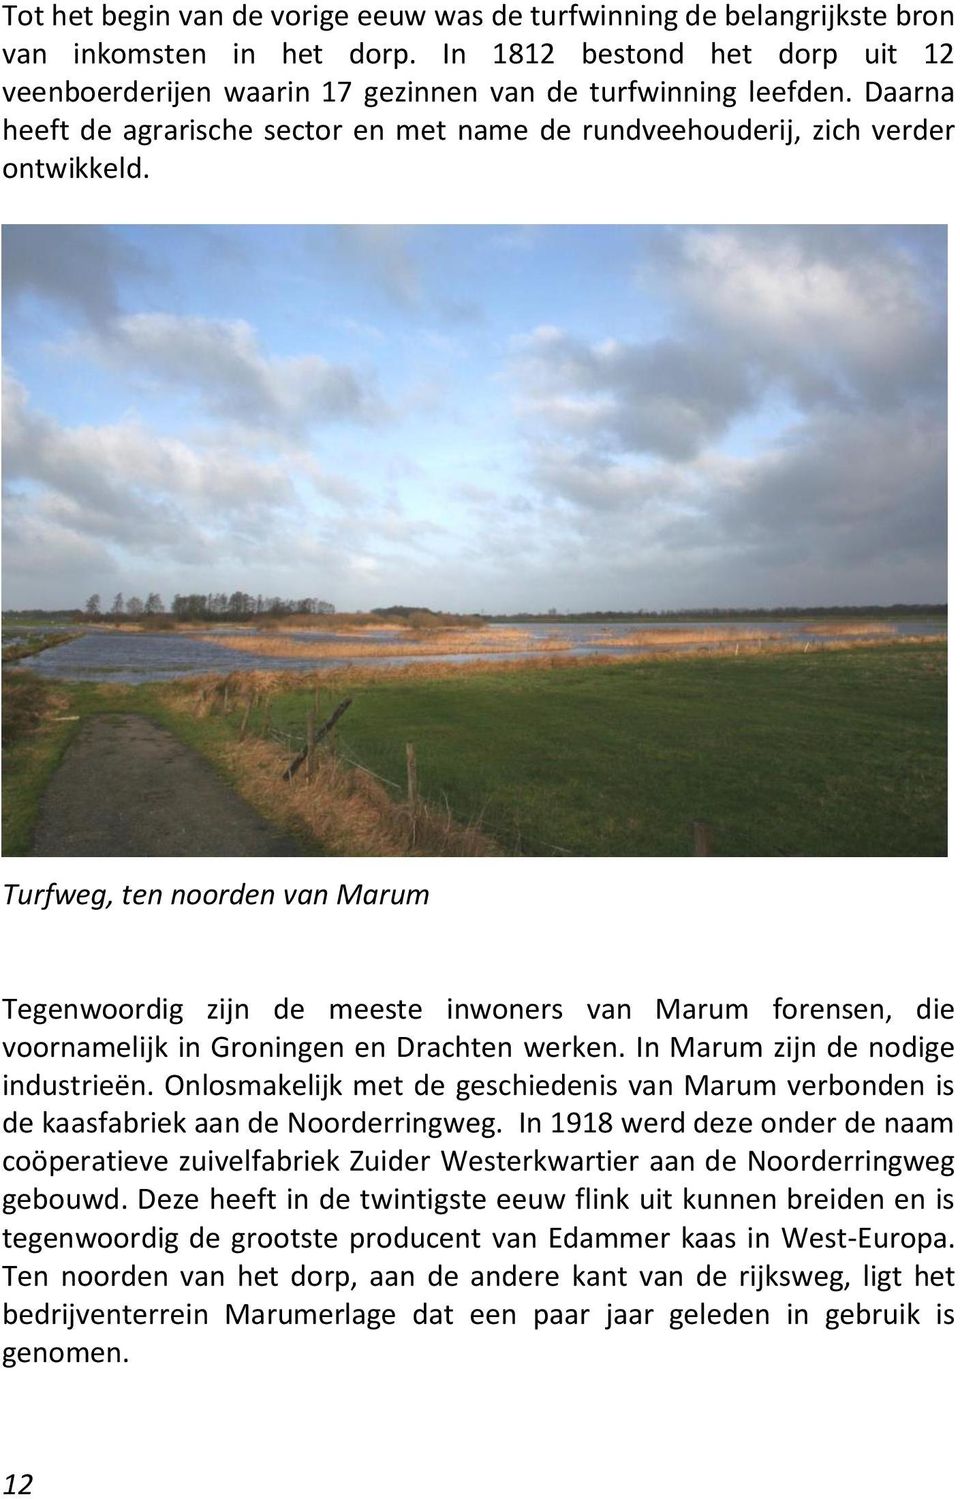 Turfweg, ten noorden van Marum Tegenwoordig zijn de meeste inwoners van Marum forensen, die voornamelijk in Groningen en Drachten werken. In Marum zijn de nodige industrieën.